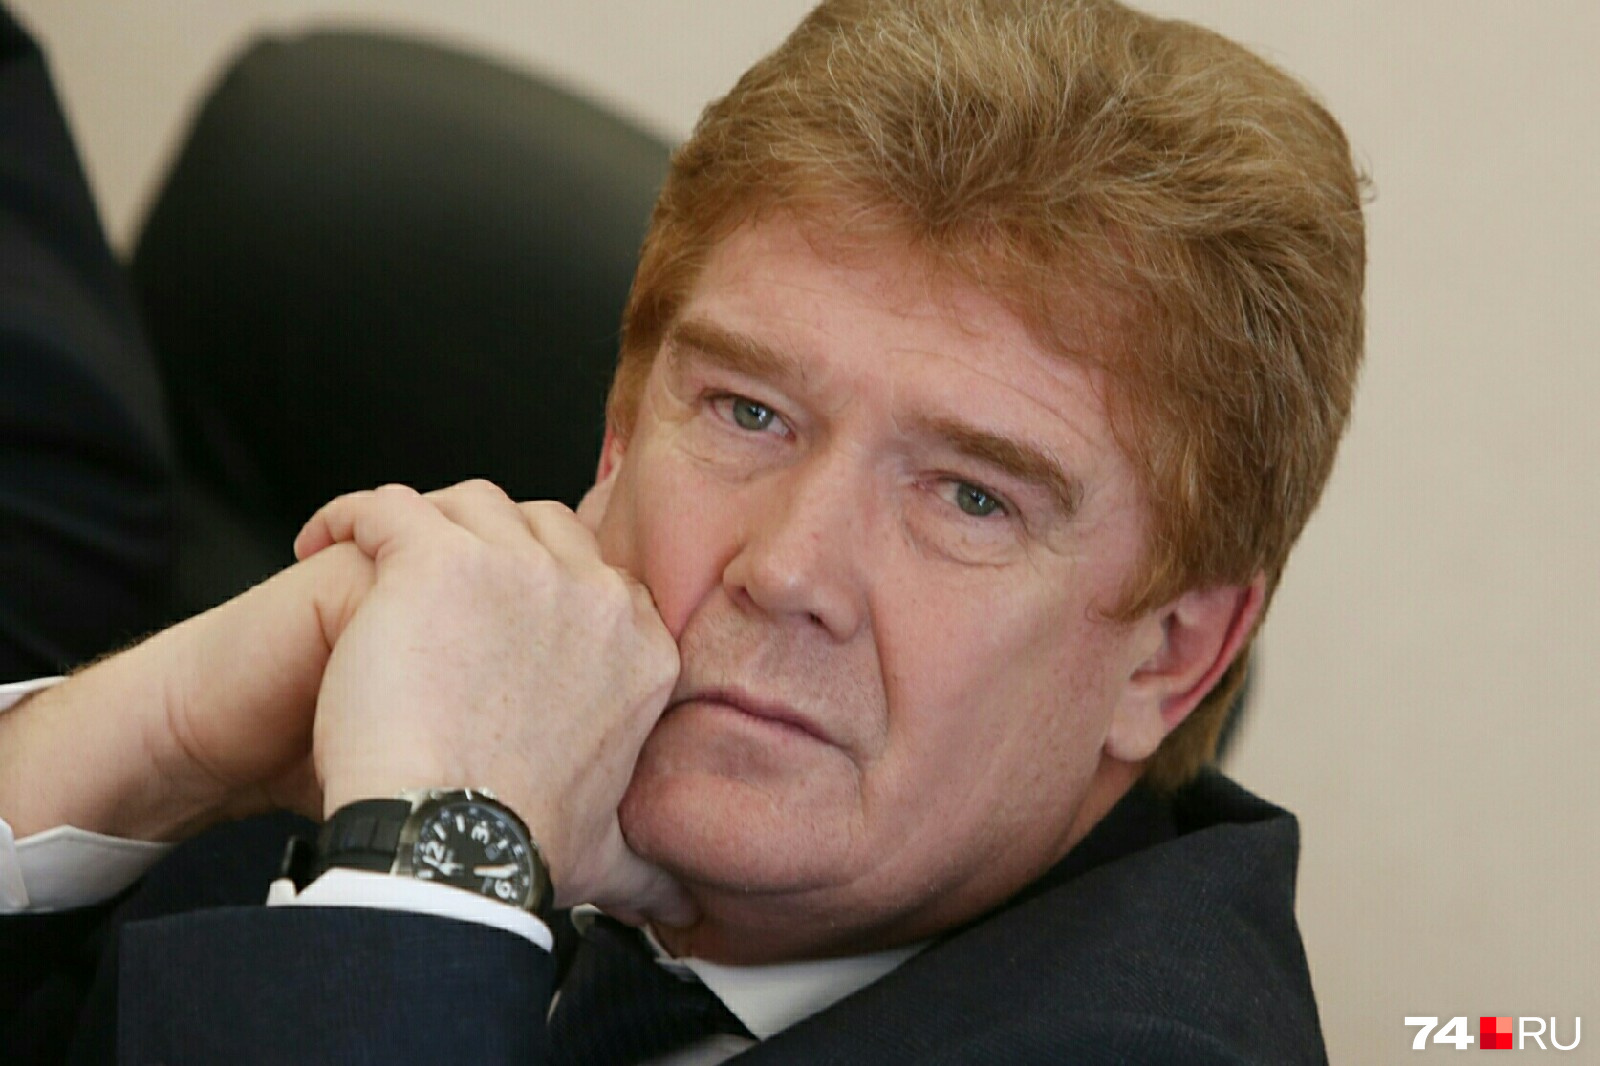 Владимир Елистратов сдержанно воспринял итог голосования, свою победу